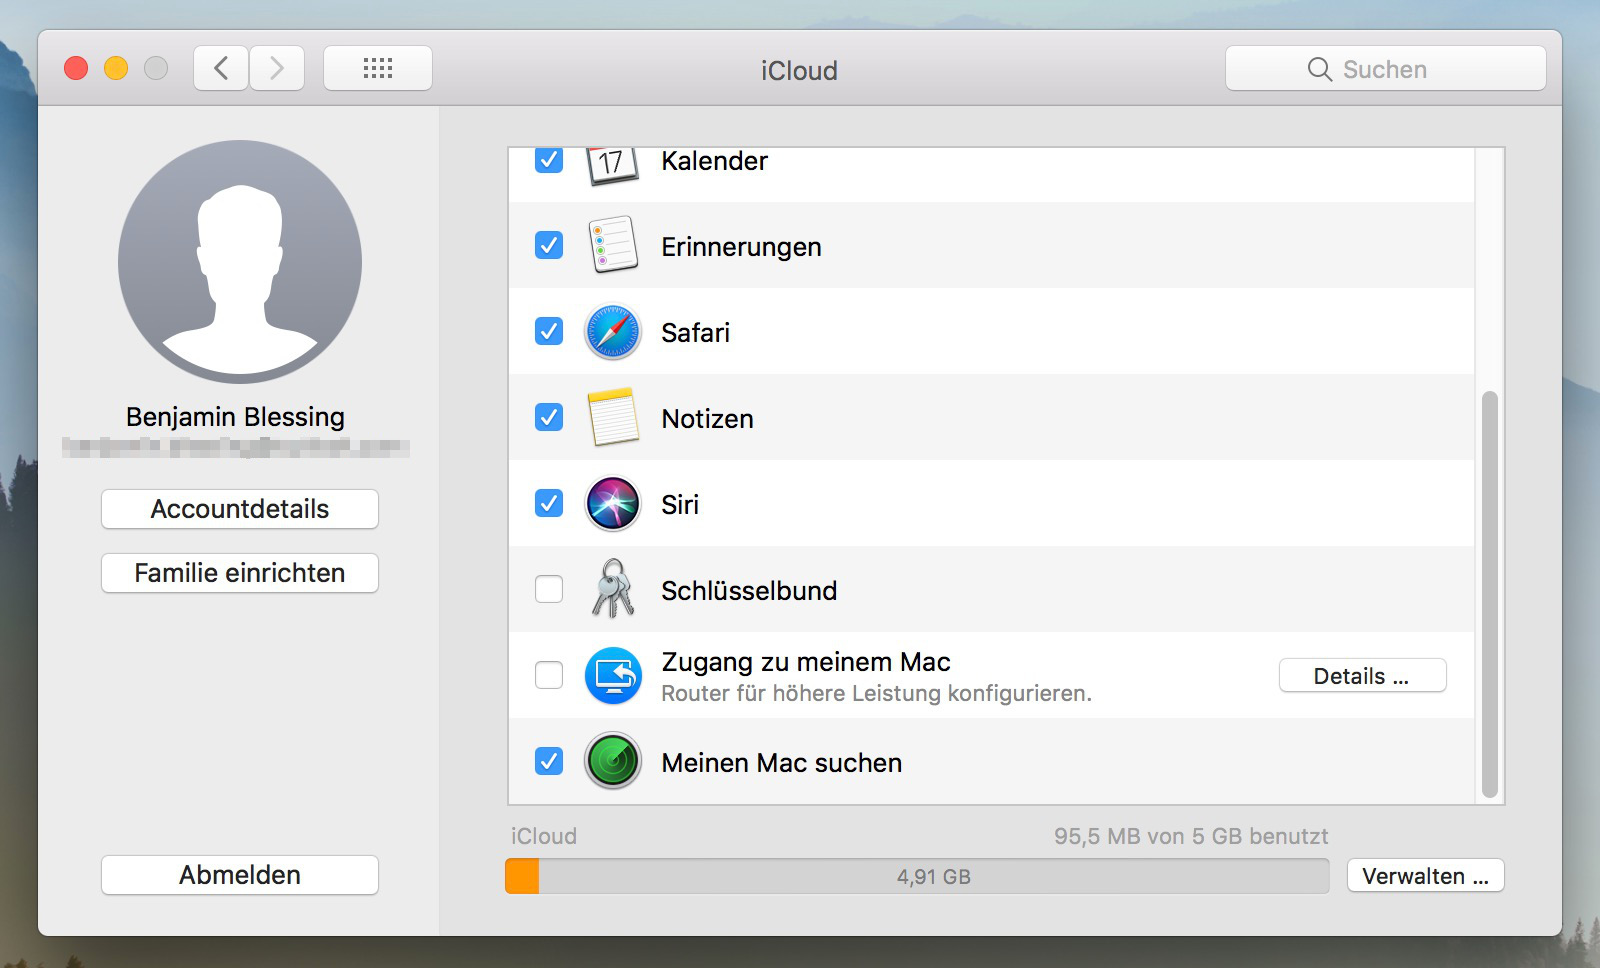 Meinen Mac suchen unter iCloud aktivieren